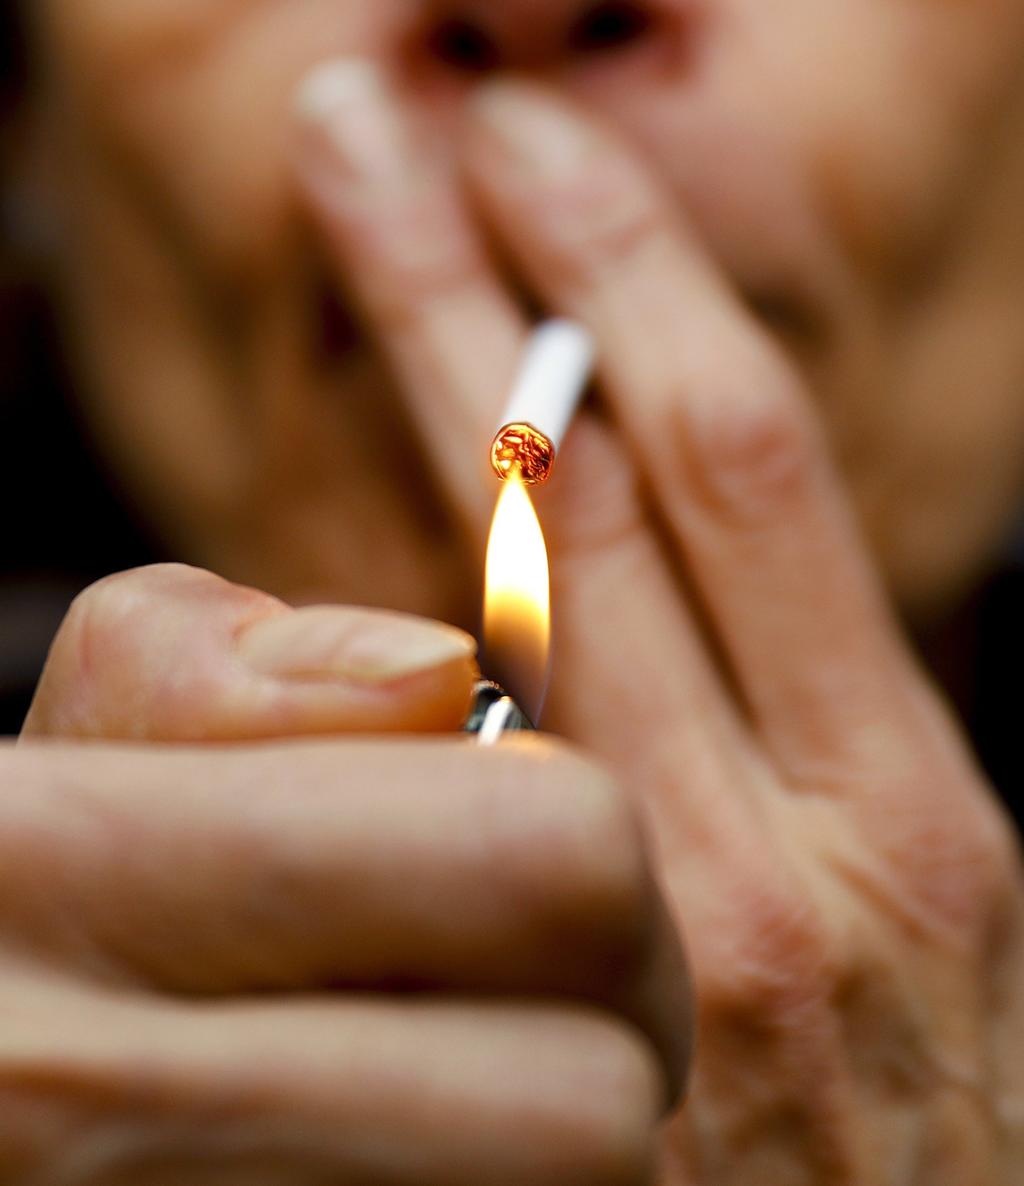 Consumo de tabaco genera pérdidas anuales de 1.4 bdd